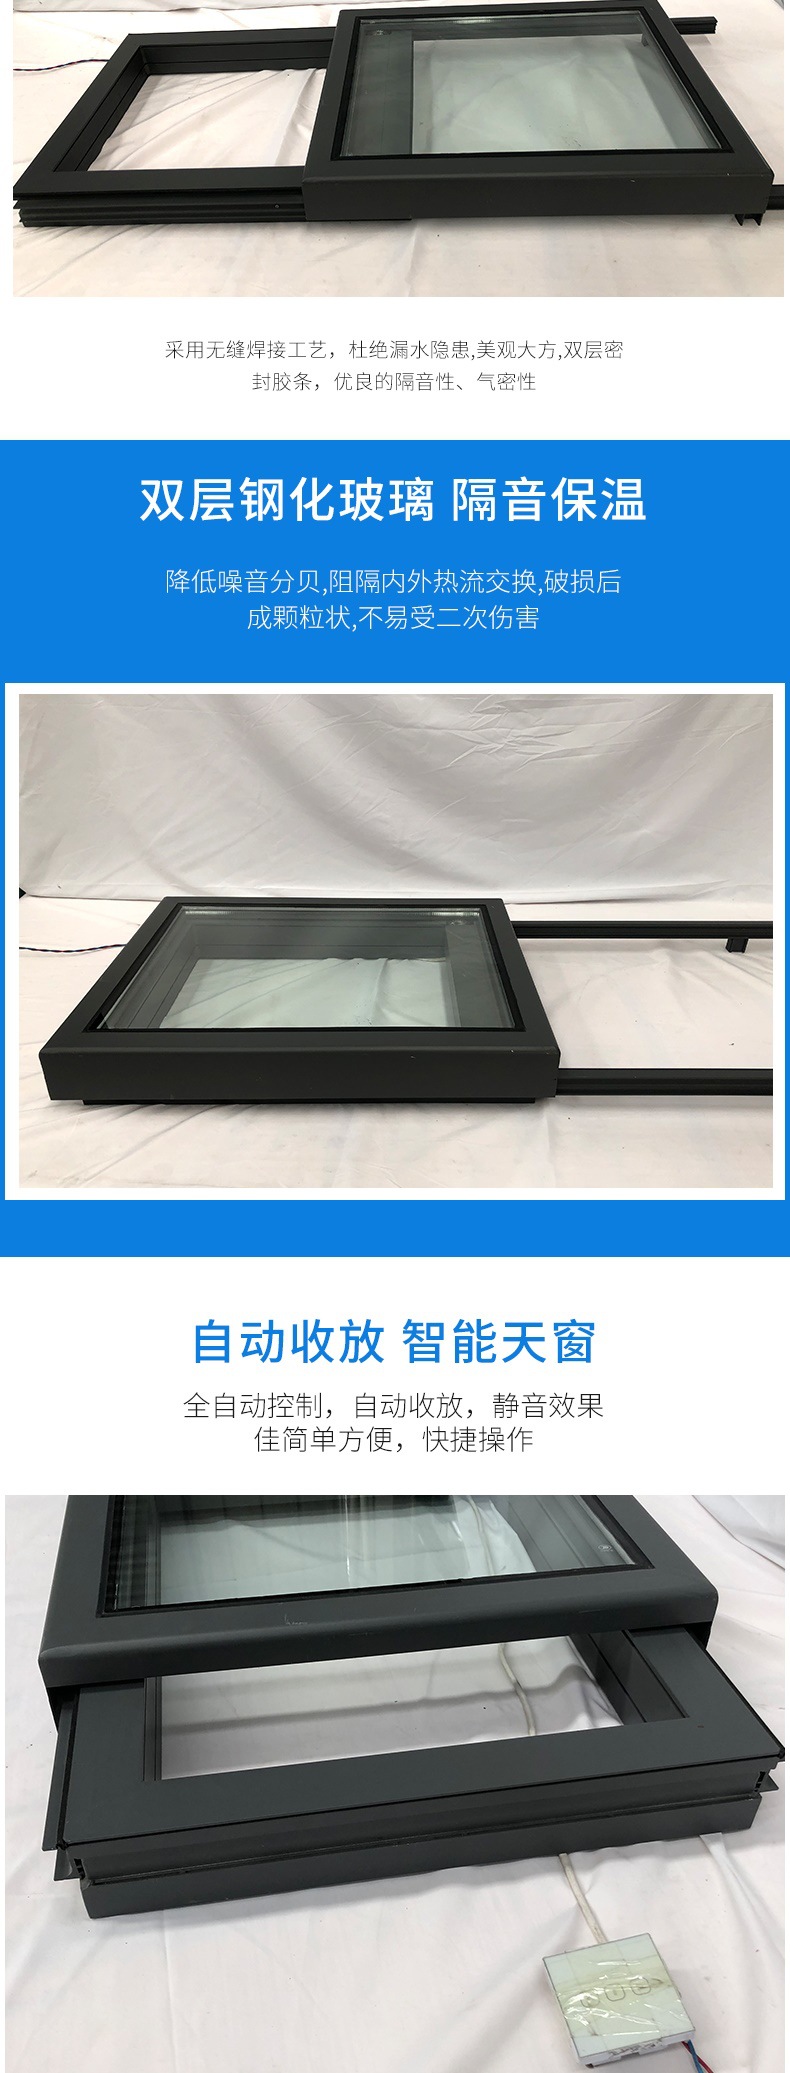 厂家定制大型平滑式电动天窗 大型平移天窗 电动遥控折叠推拉天窗